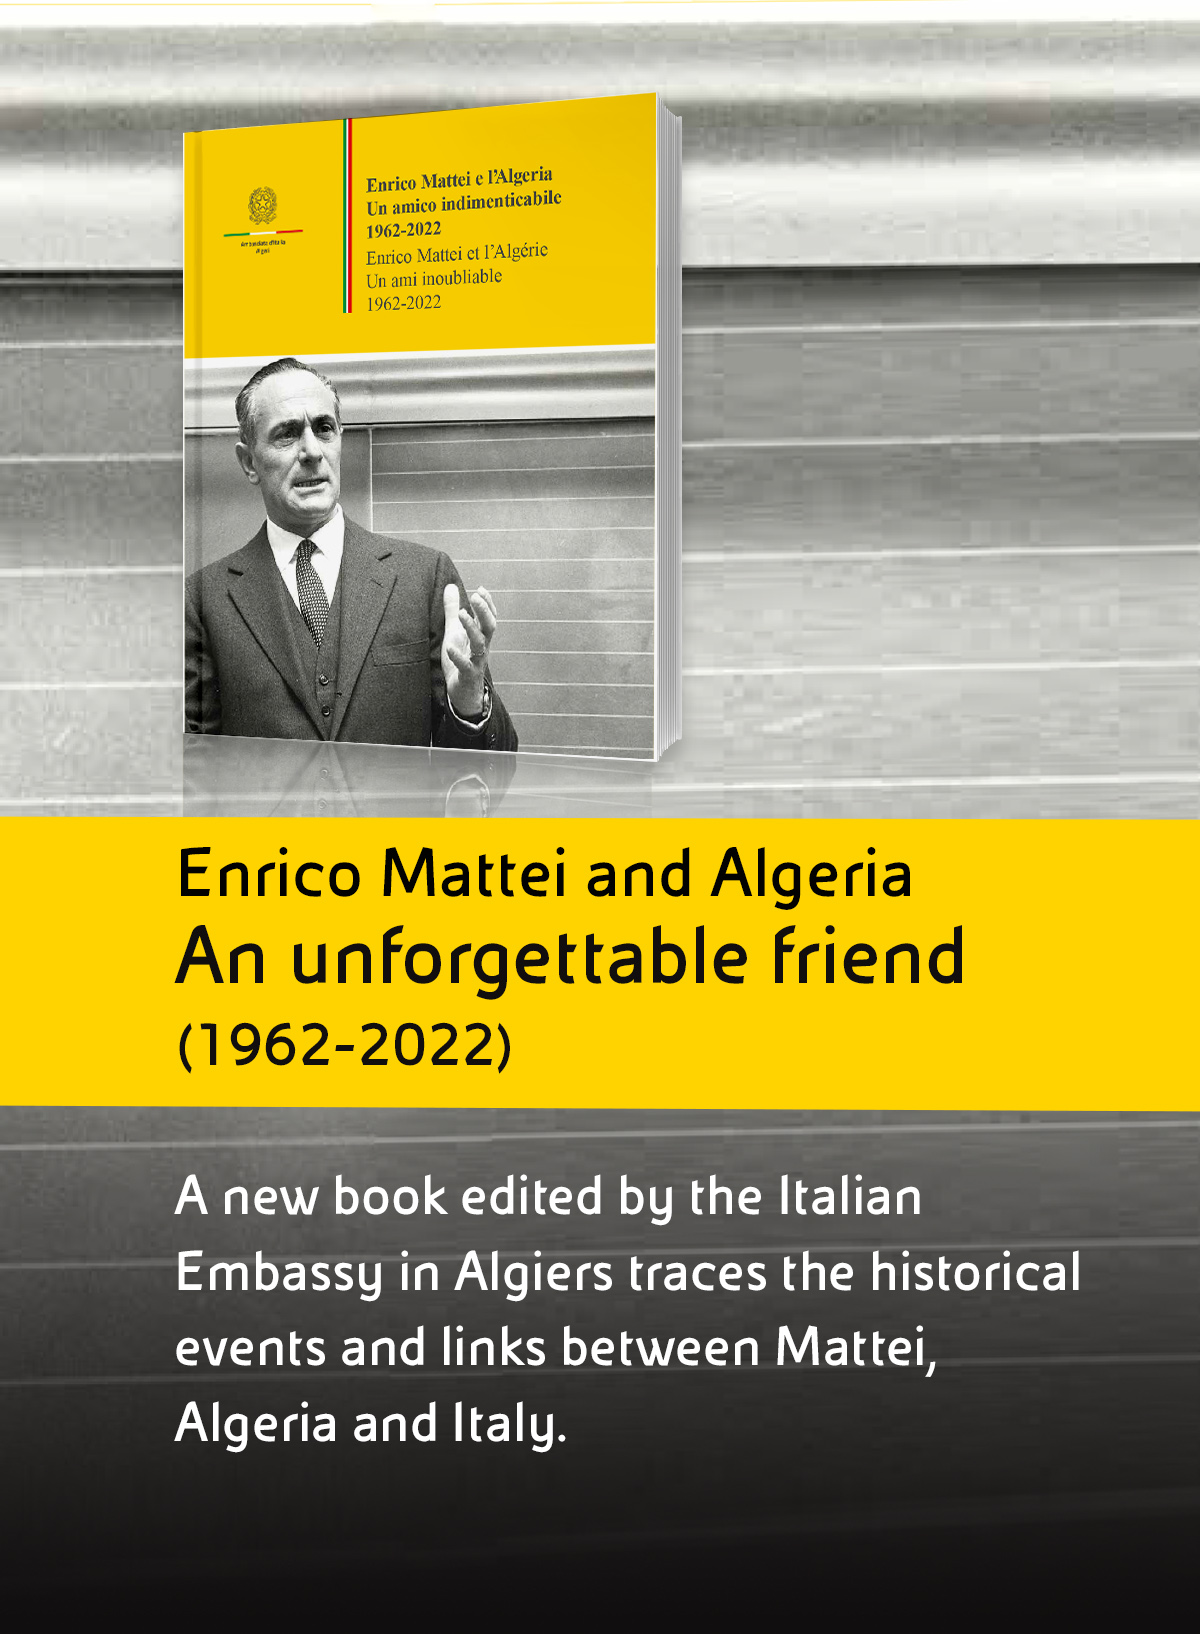 mobile-fascia-libro-enrico-mattei-algeria-commemorazione-eng.jpg